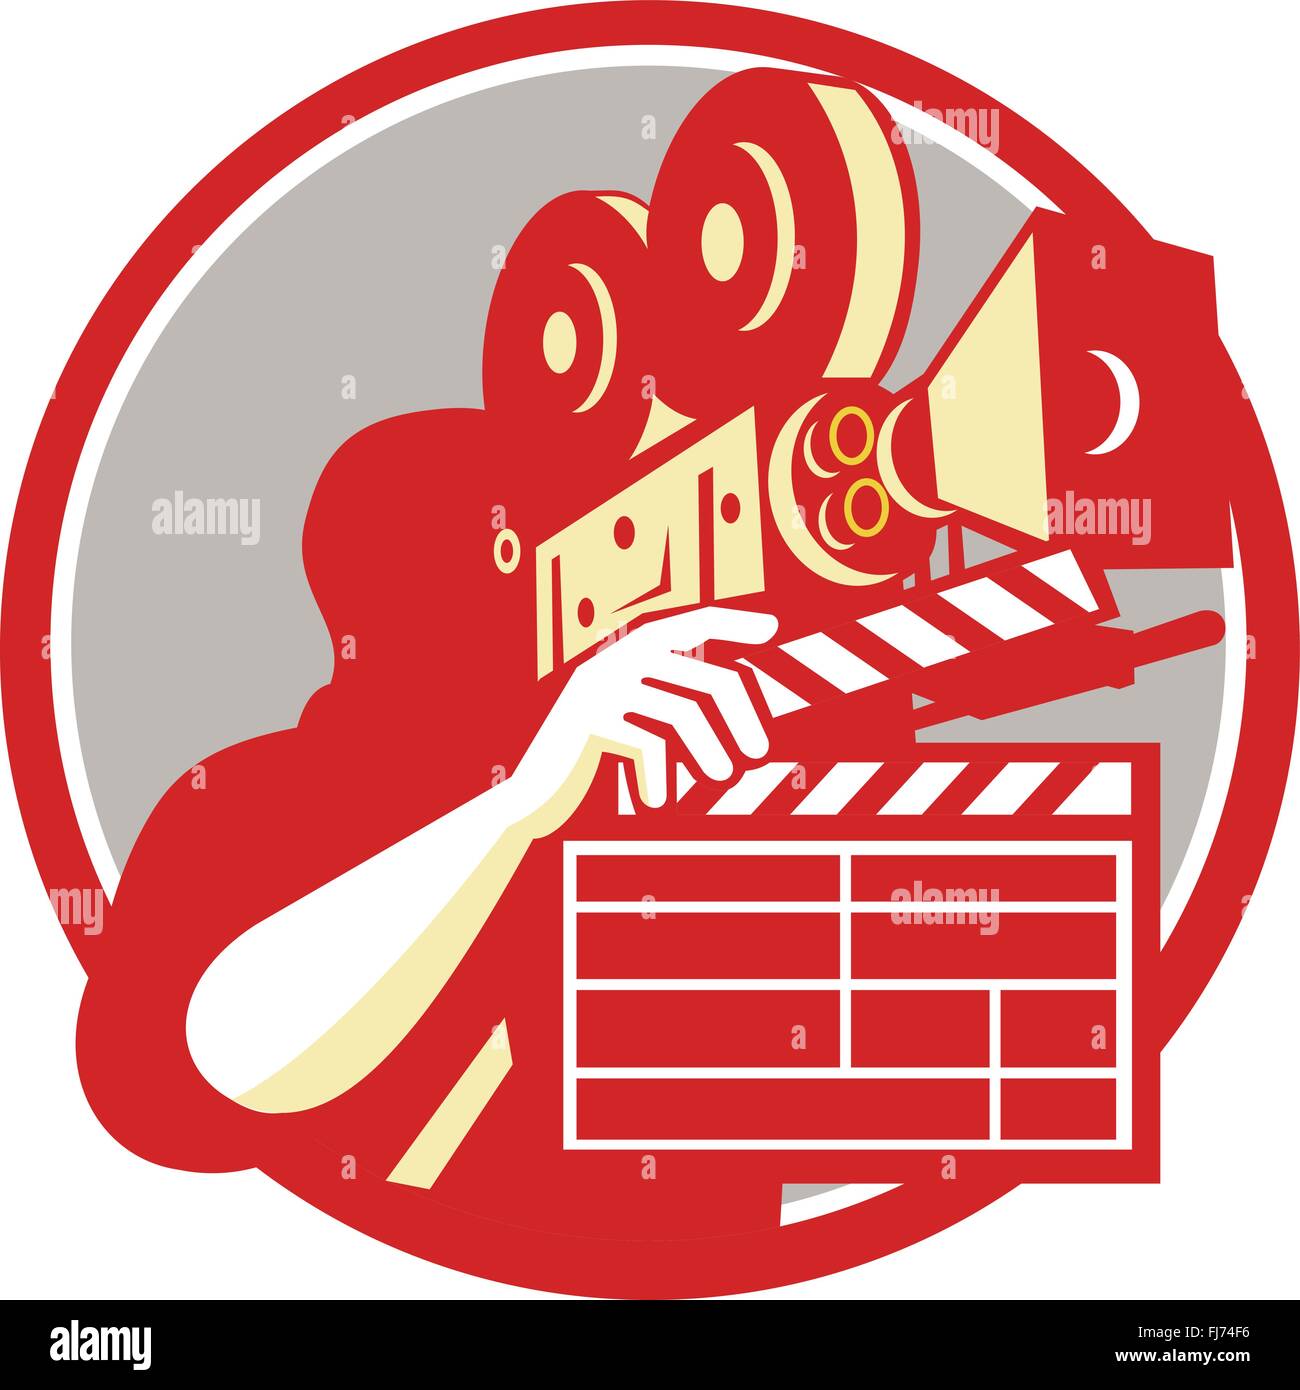 Illustration von Kameramann Filmregisseur mit Vintage-Film-Film-Kamera und Schindeln auf isolierte Hintergrund getan im retro-Stil in Kreis gesetzt. Stock Vektor